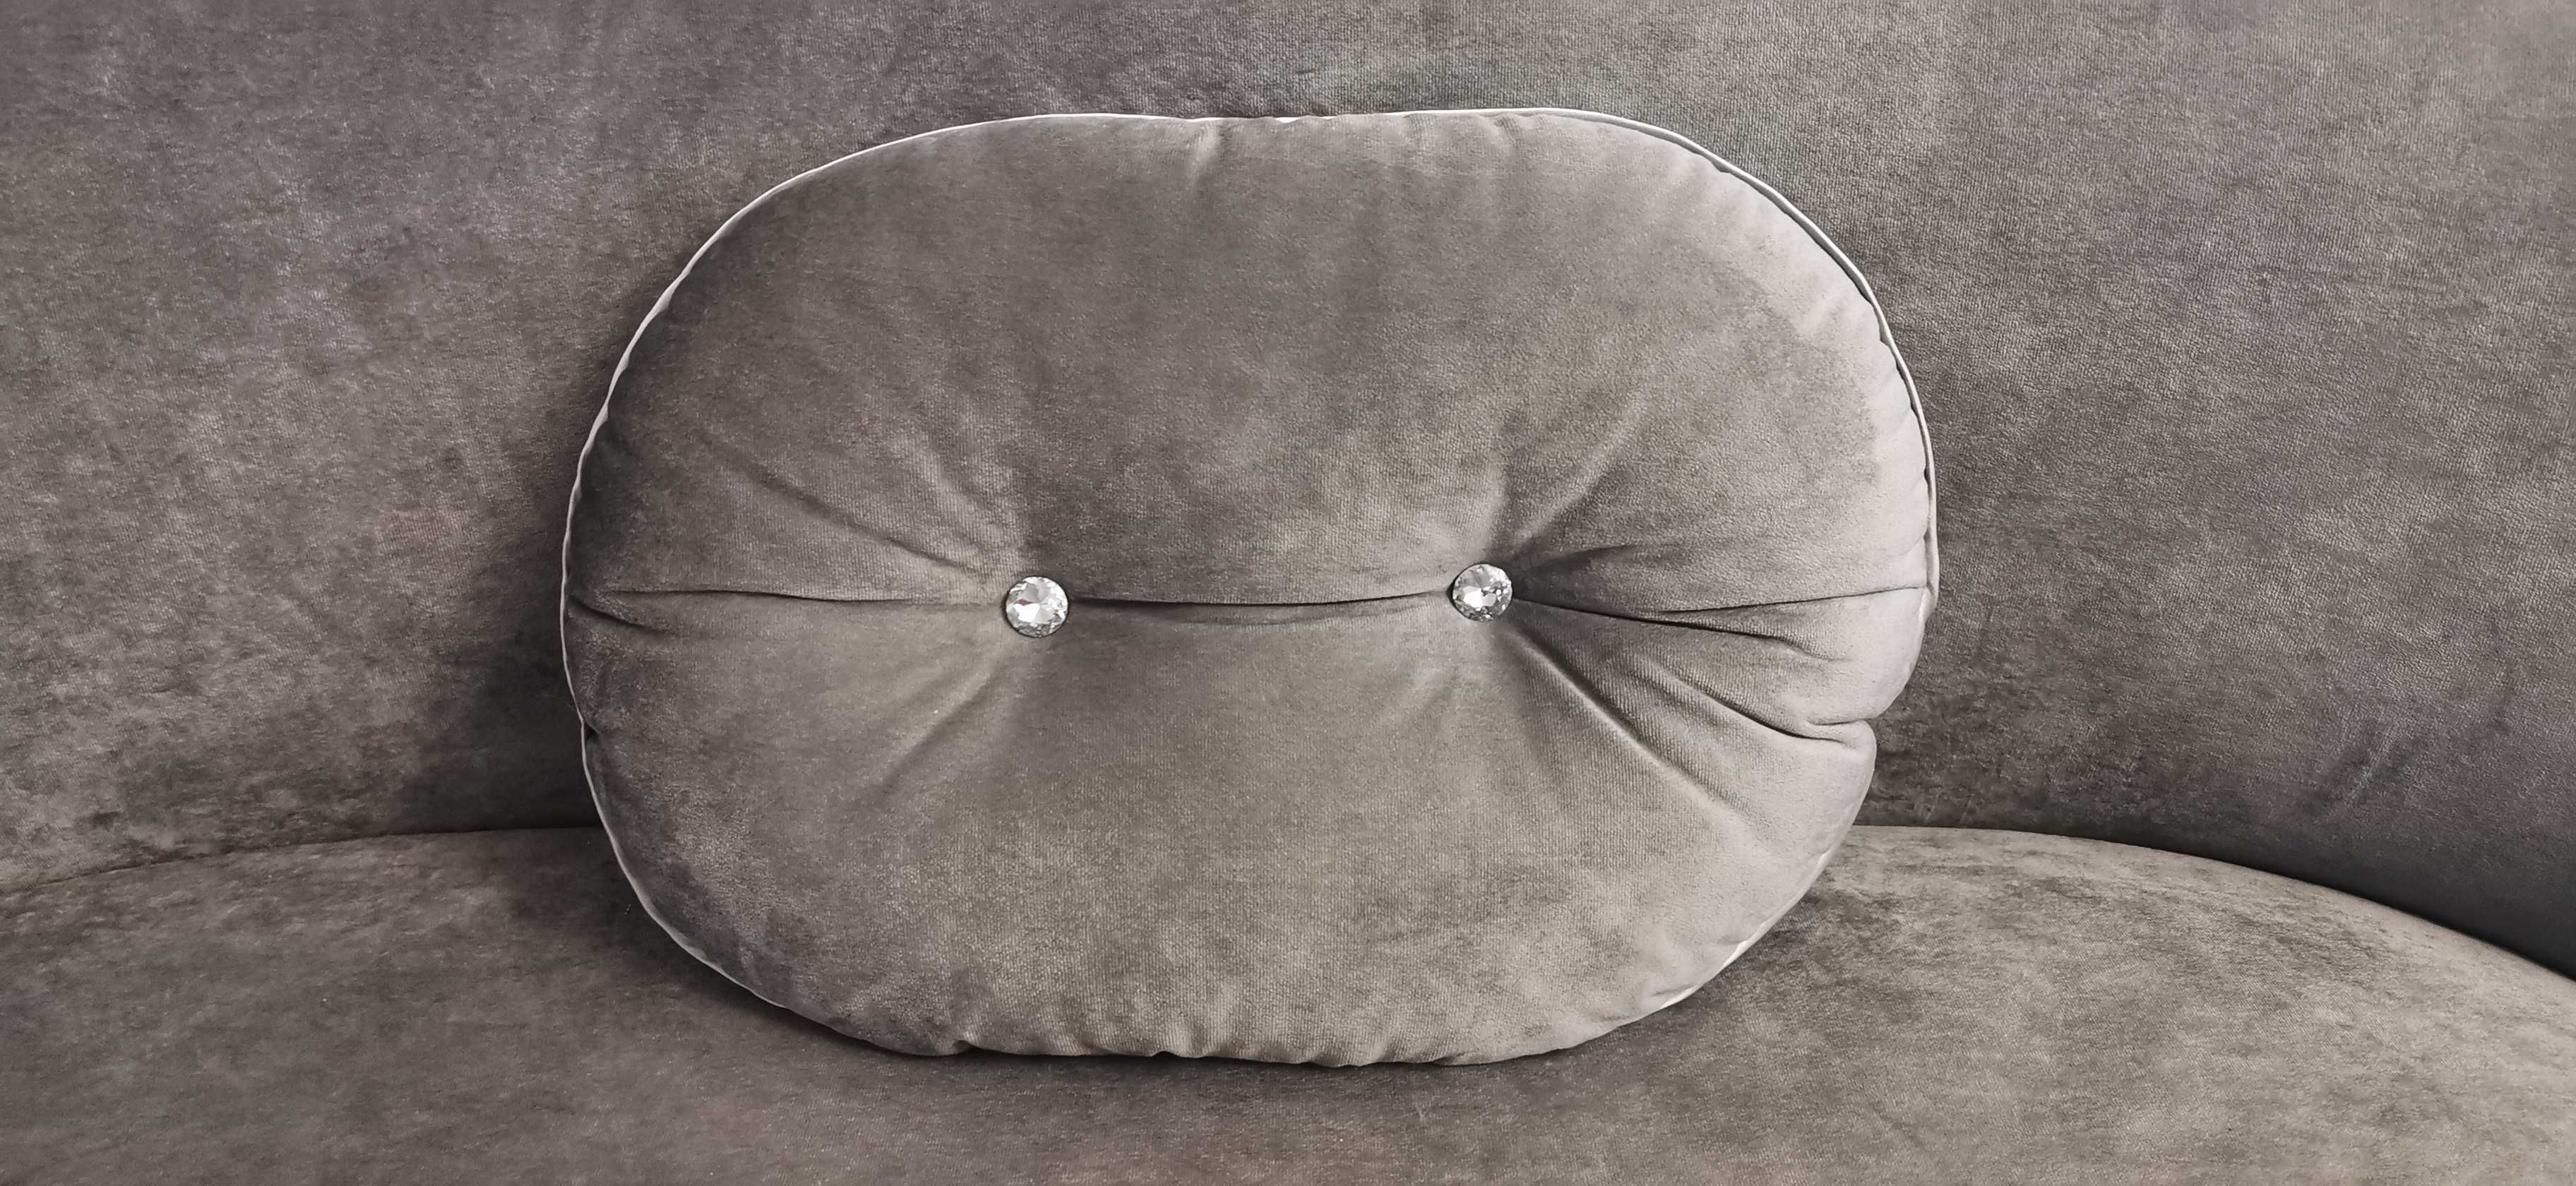 Sofa, szezląg glamour z koroną